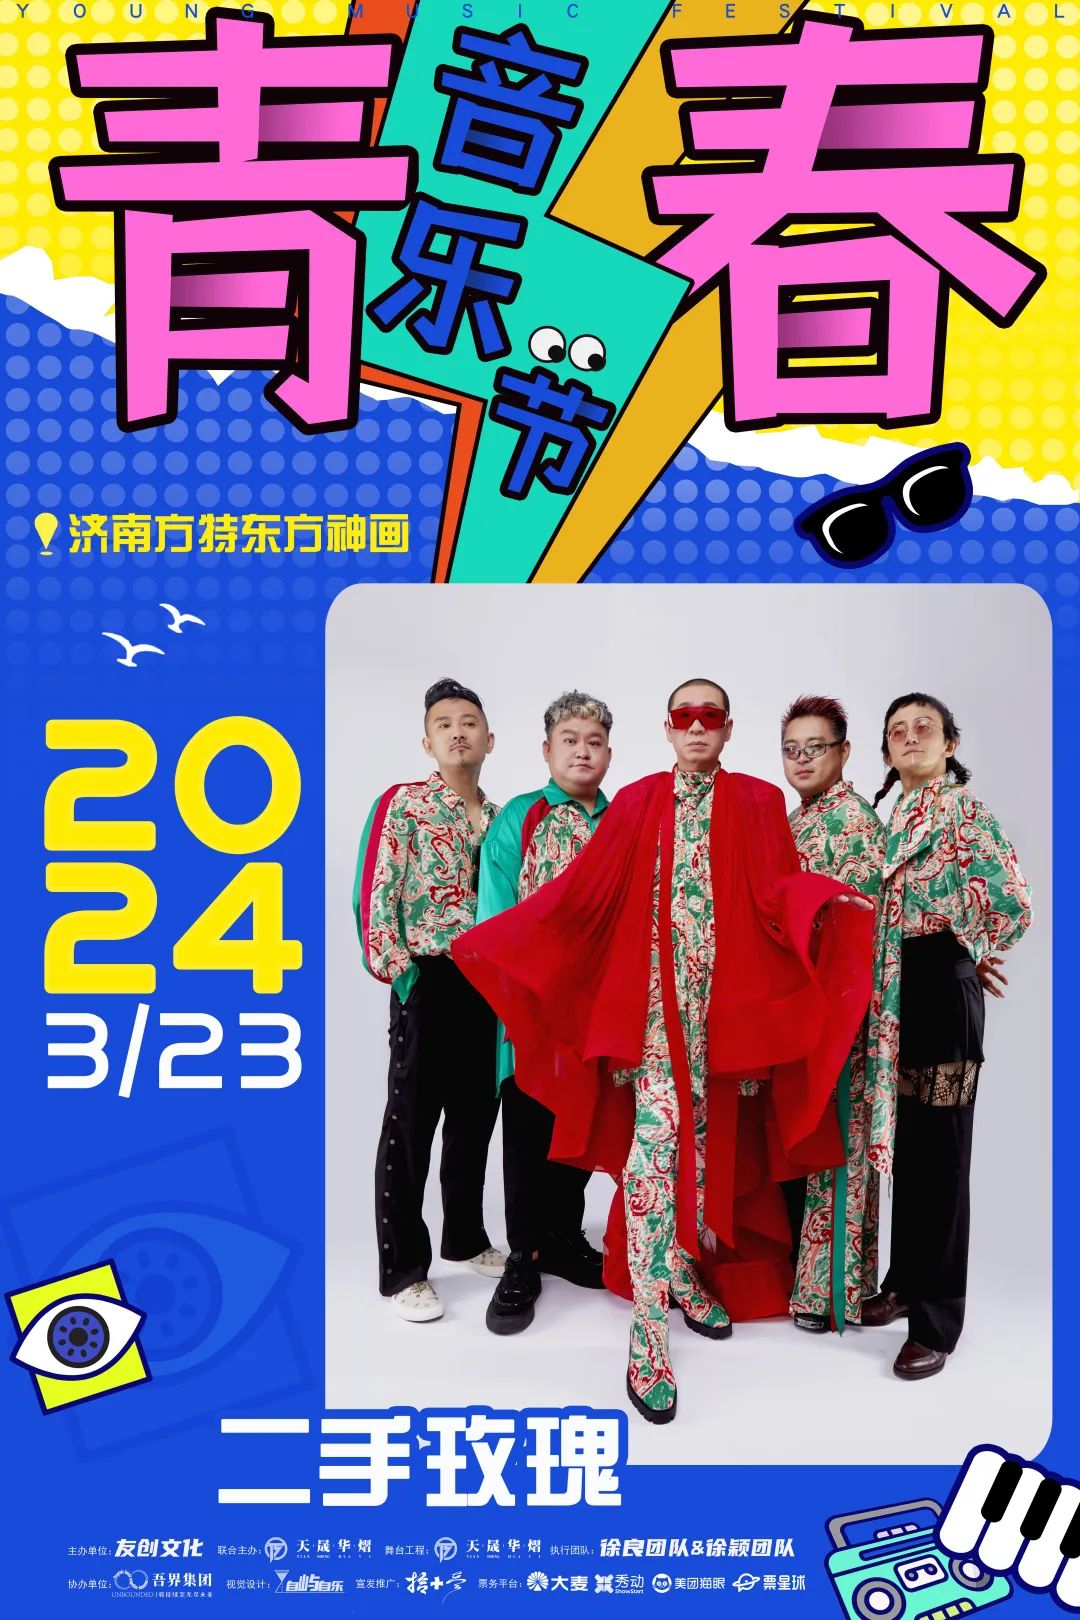 济南青春音乐节